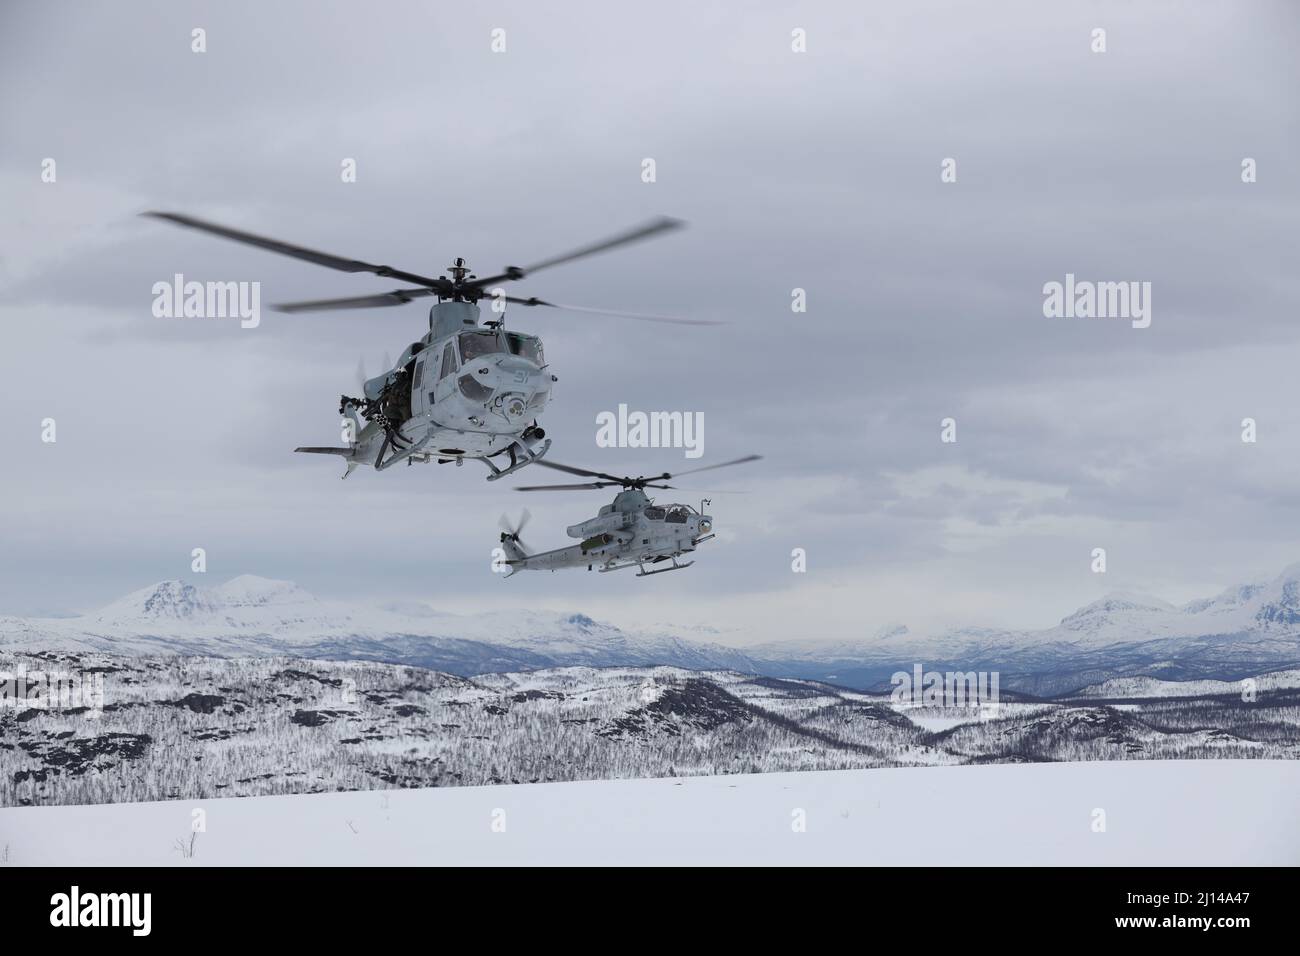 Setermoen, Noruega. 17 de marzo de 2022. Real Fuerza Aérea Noruega Col. Eirik Stueland aterriza un helicóptero de ataque Venom UH-1Y asignado al Escuadrón 269 del Helicóptero Marine Light Attack, durante el Ejercicio Cold Response 22, 17 de marzo de 2022 en Setermoen, Noruega. El ejercicio bienal de preparación y defensa nacional de Noruega se considera un contrapeso a la agresión rusa en la región. Crédito: SGT. Jonathon Wiederhold/EE.UU Marine Corps/Alamy Live News Foto de stock